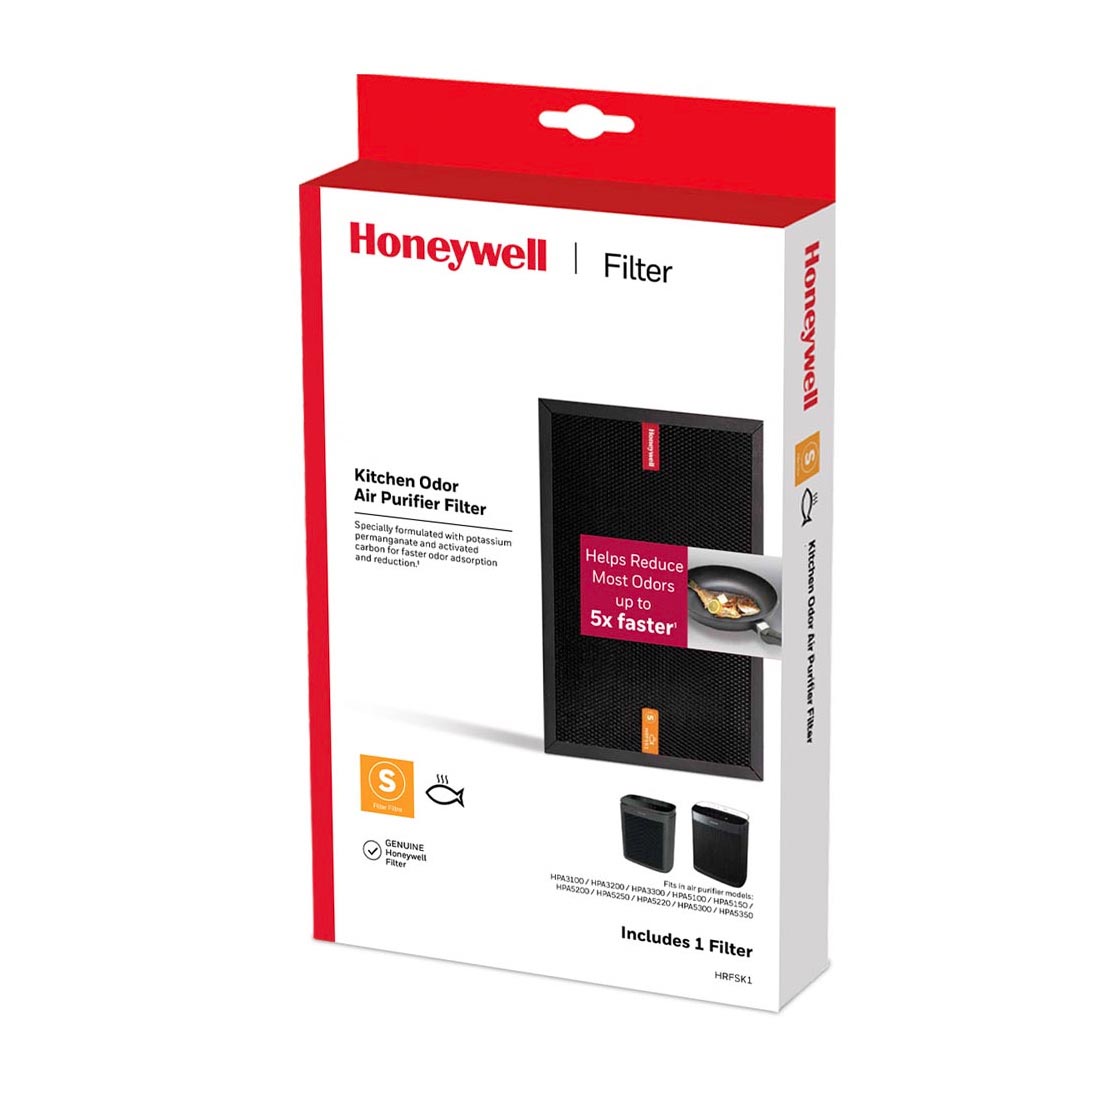 Honeywell Kitchen Odor Air Purifier Filter, HRFSK1 (Filter S)